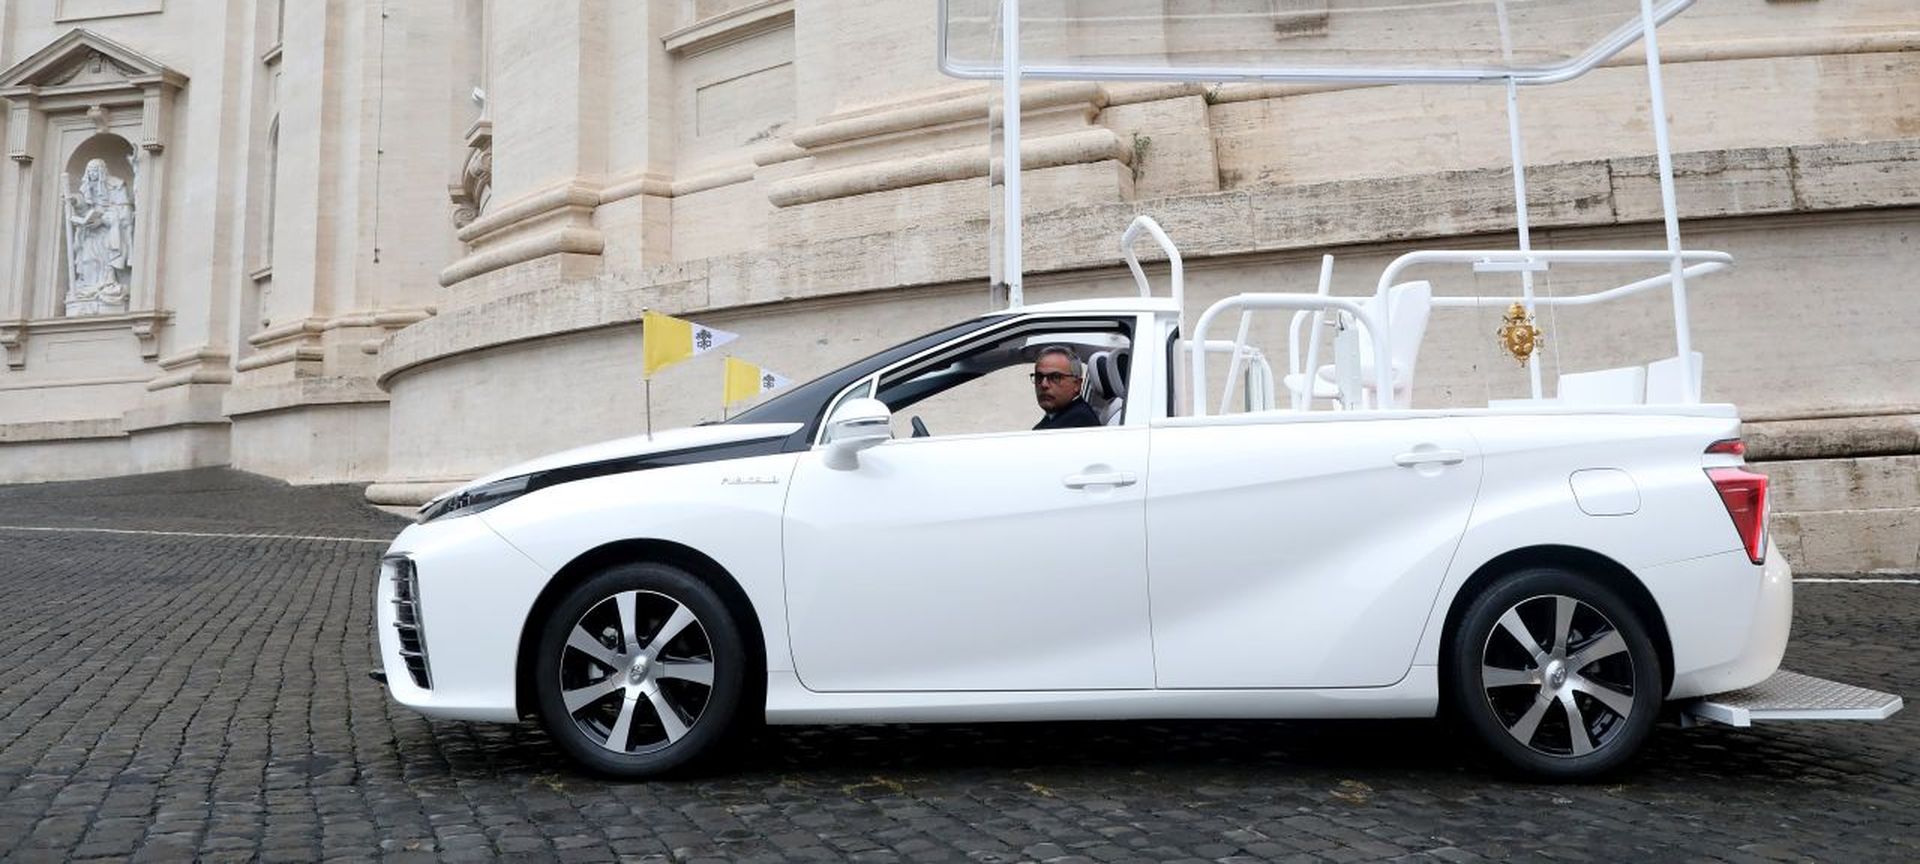 Papież Franciszek otrzymał nowy samochód czy wodorowy